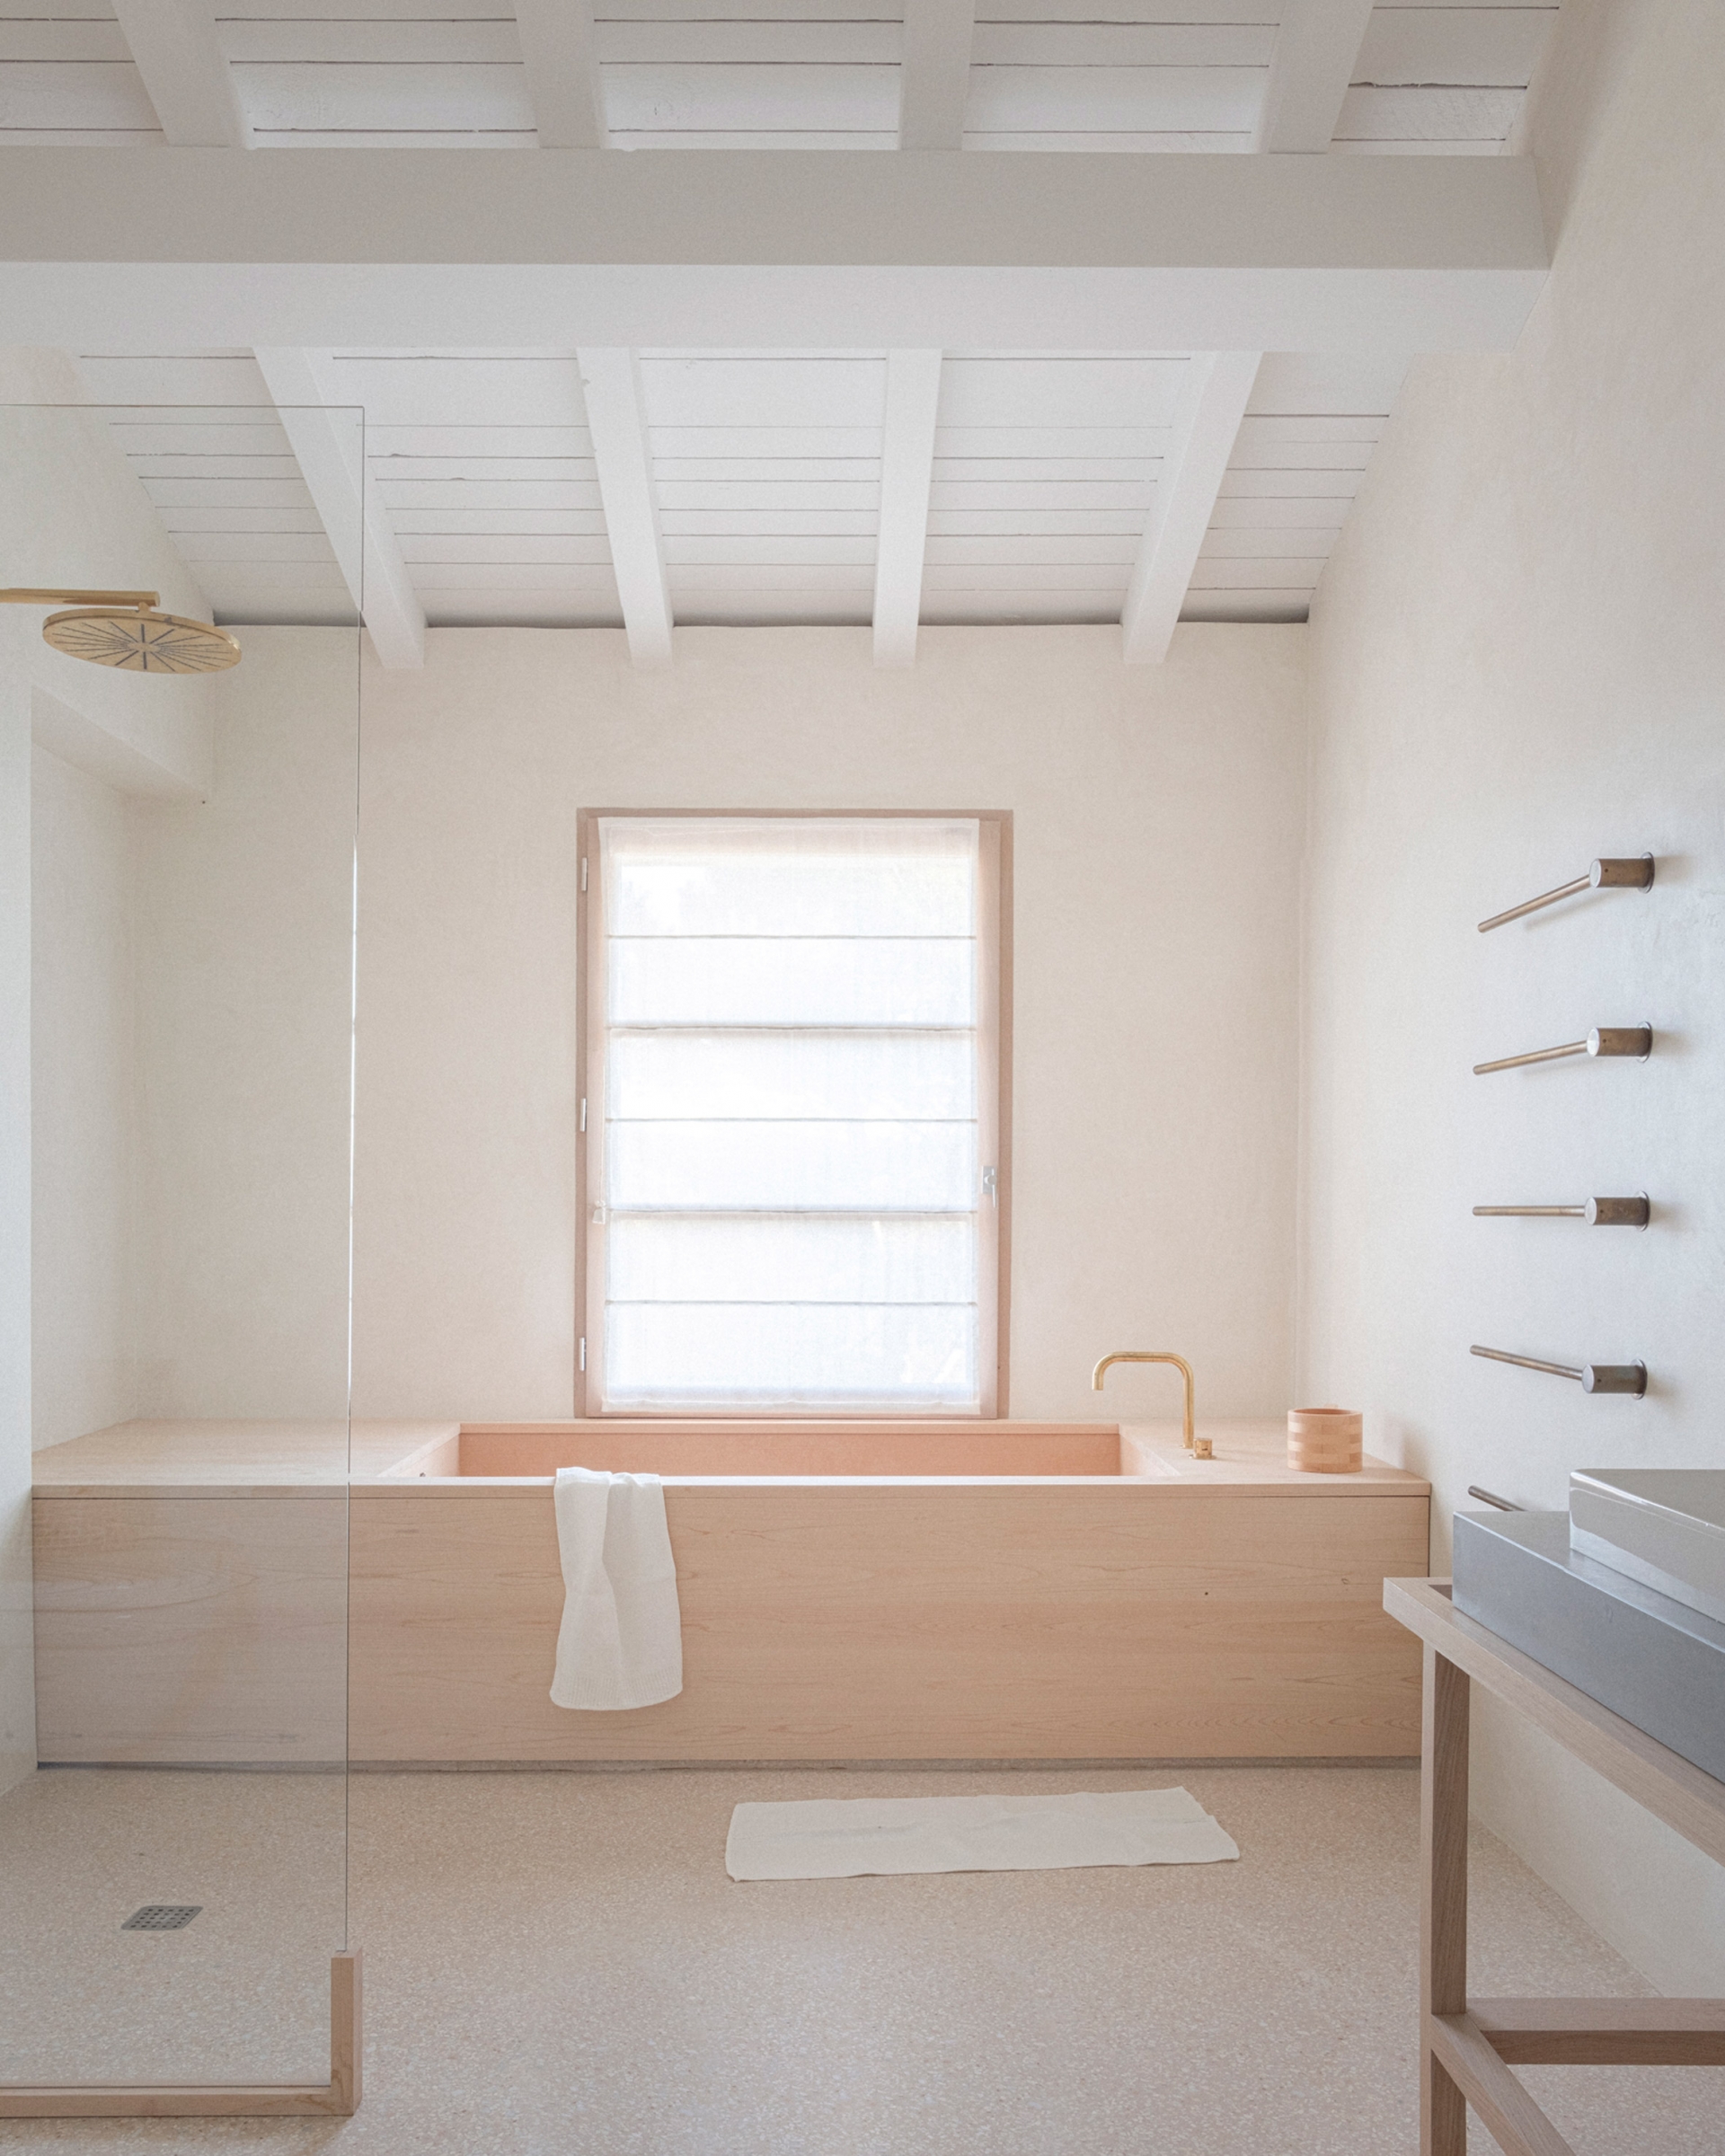 Trong phòng tắm, bồn tắm đặt làm riêng được làm từ gỗ cây bách Hinoki - có nguồn gốc từ Nhật Bản. Một tấm kính cao, trong suốt được sử dụng để phân cách bồn tắm với phần còn lại của không gian.